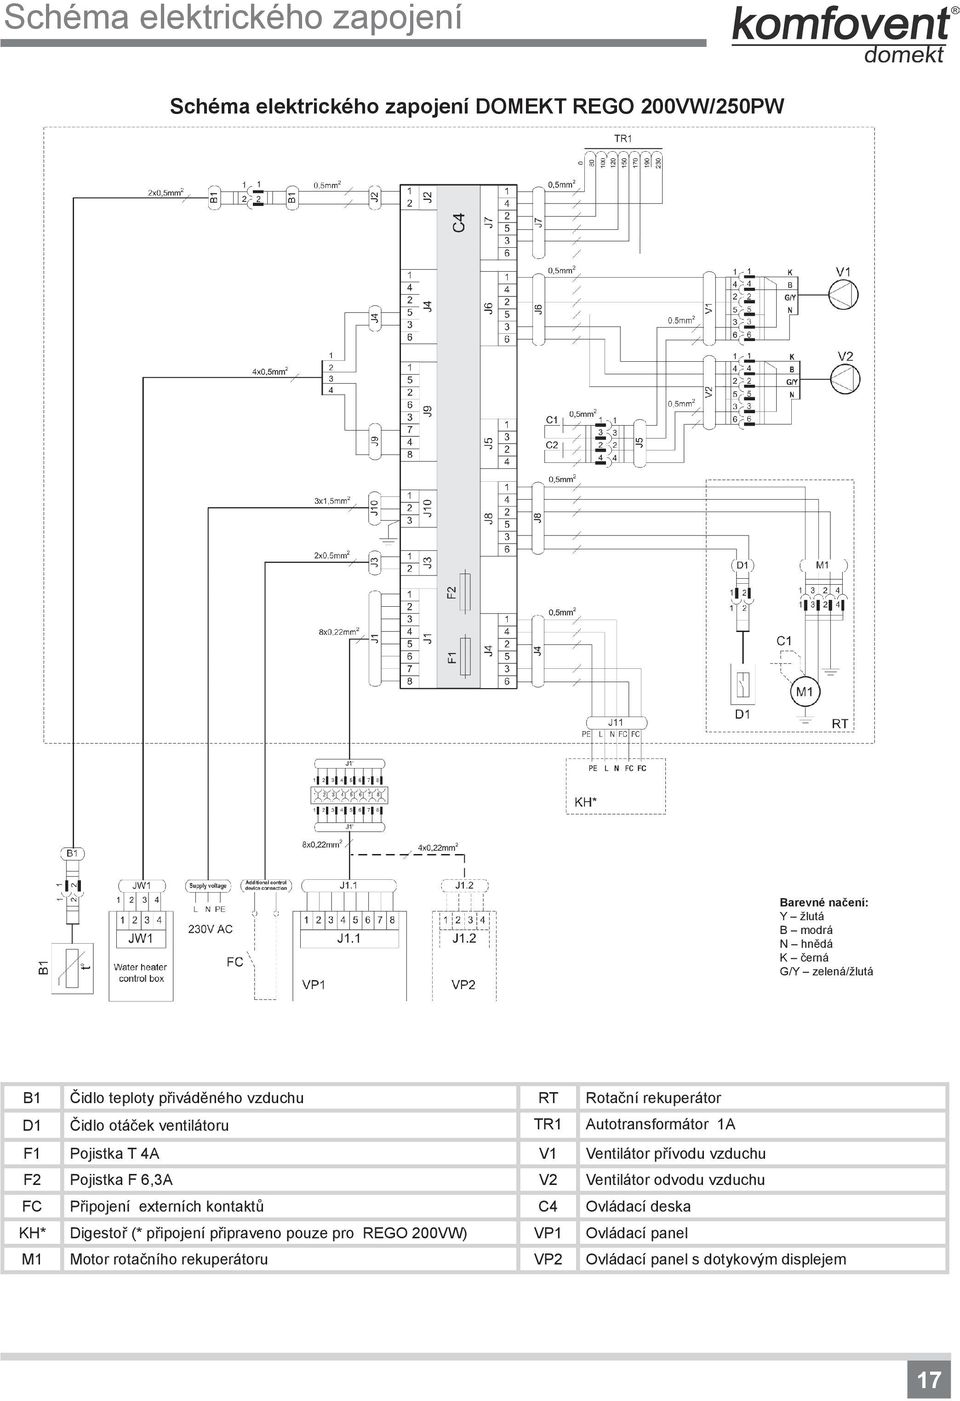 V2 Ventilátor odvodu vzduchu FC Připojení externích kontaktů C4 Ovládací deska KH* Digestoř (* připojení připraveno